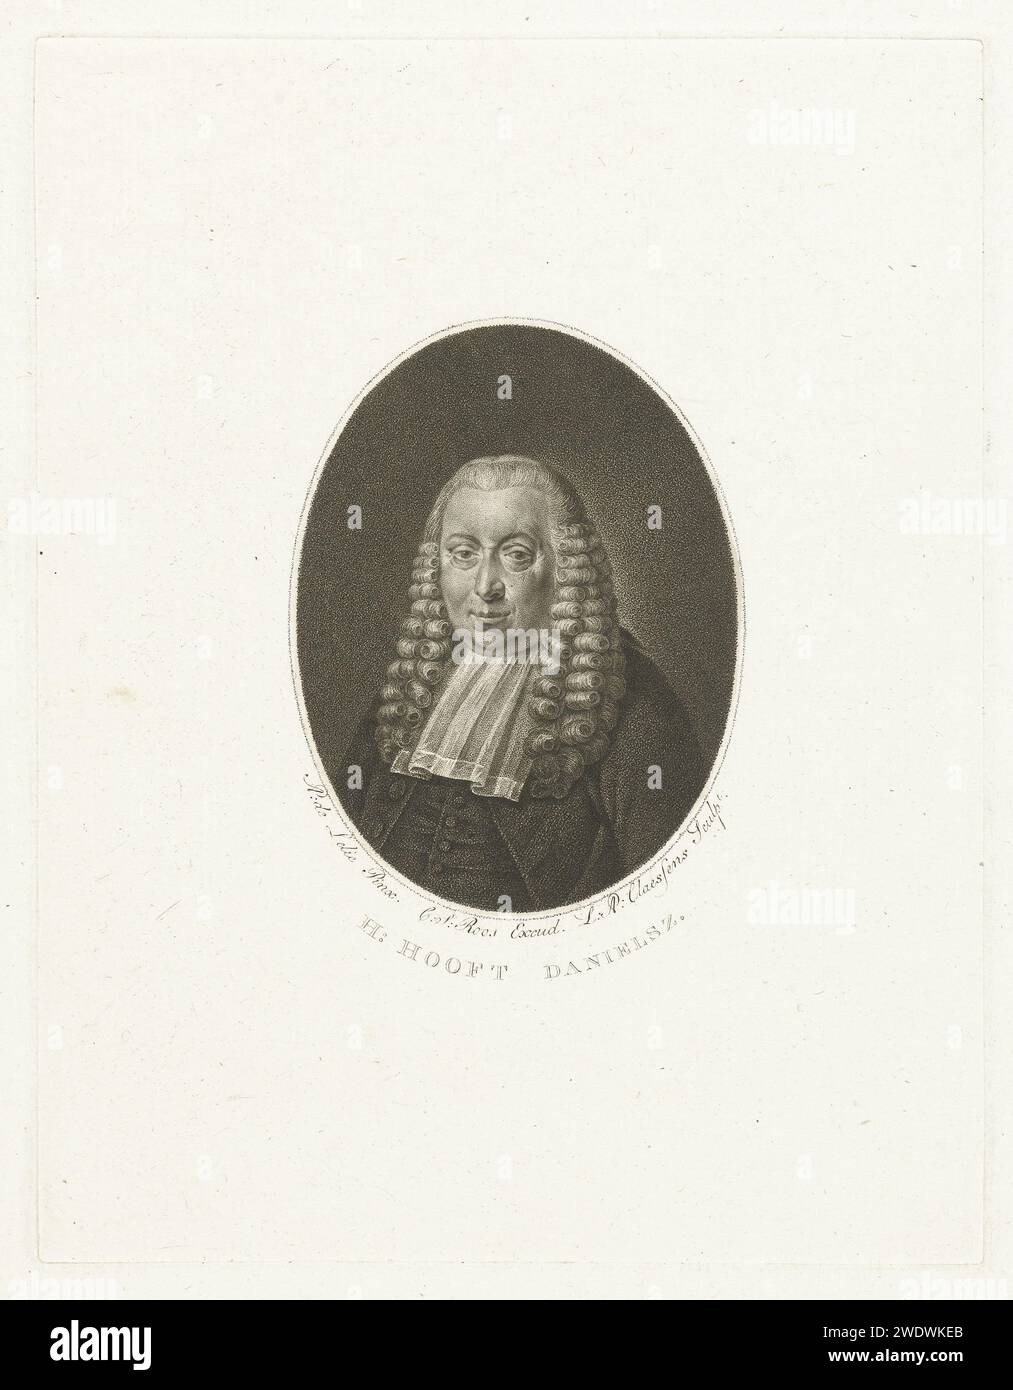 Portrait du maire d'Amsterdam Hendrik Danielsz. Hooft, Lambertus Antonius Claessens, d'après Adriaan de Lelie, c. 1792 - c. 1808 imprimer Amsterdam gravure sur papier Banque D'Images